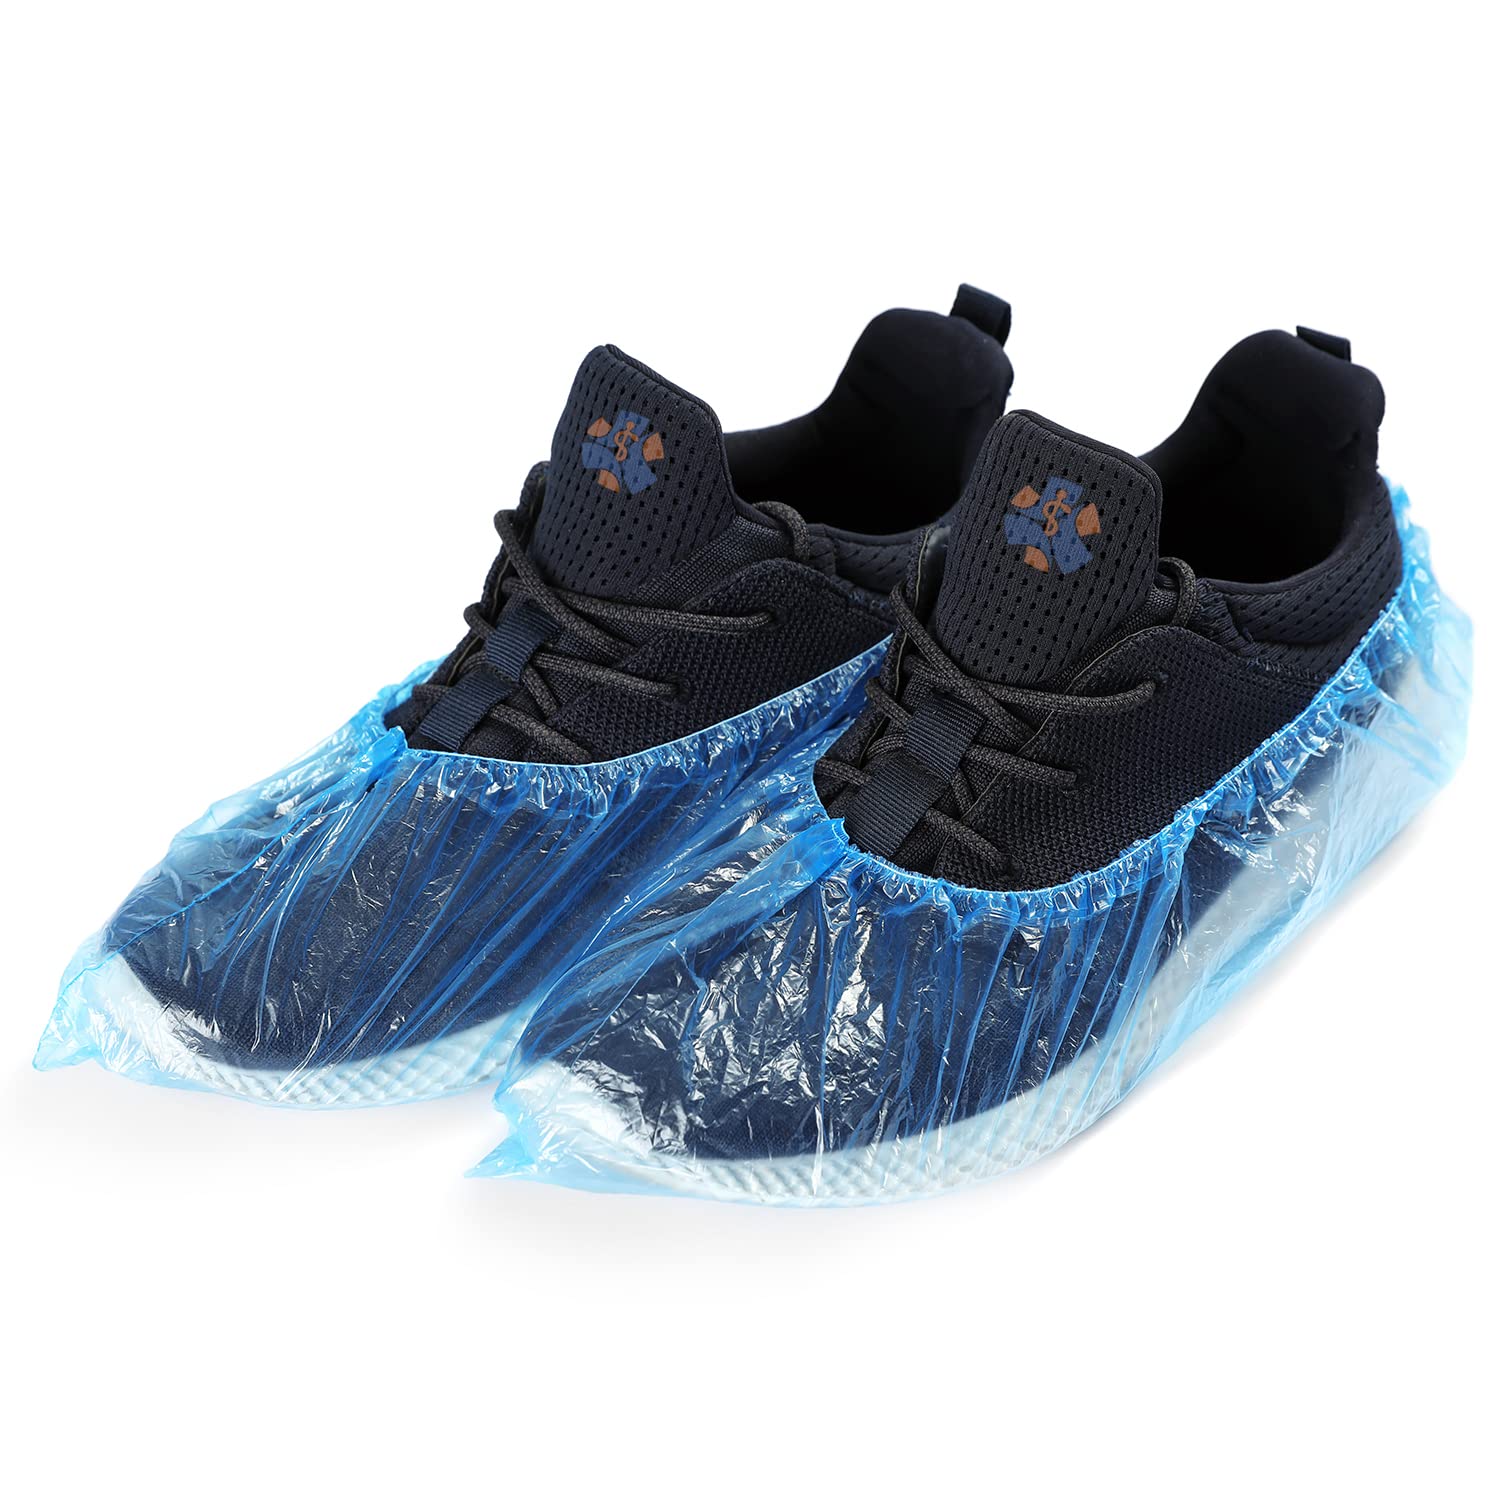 Populaire Gisinti Lot de 200 couvre-chaussures jetables pour chaussures jetables avec fermeture thermosoudée, couleur bleue, taille unique, 200 pièces Par5aICQR tout pour vous